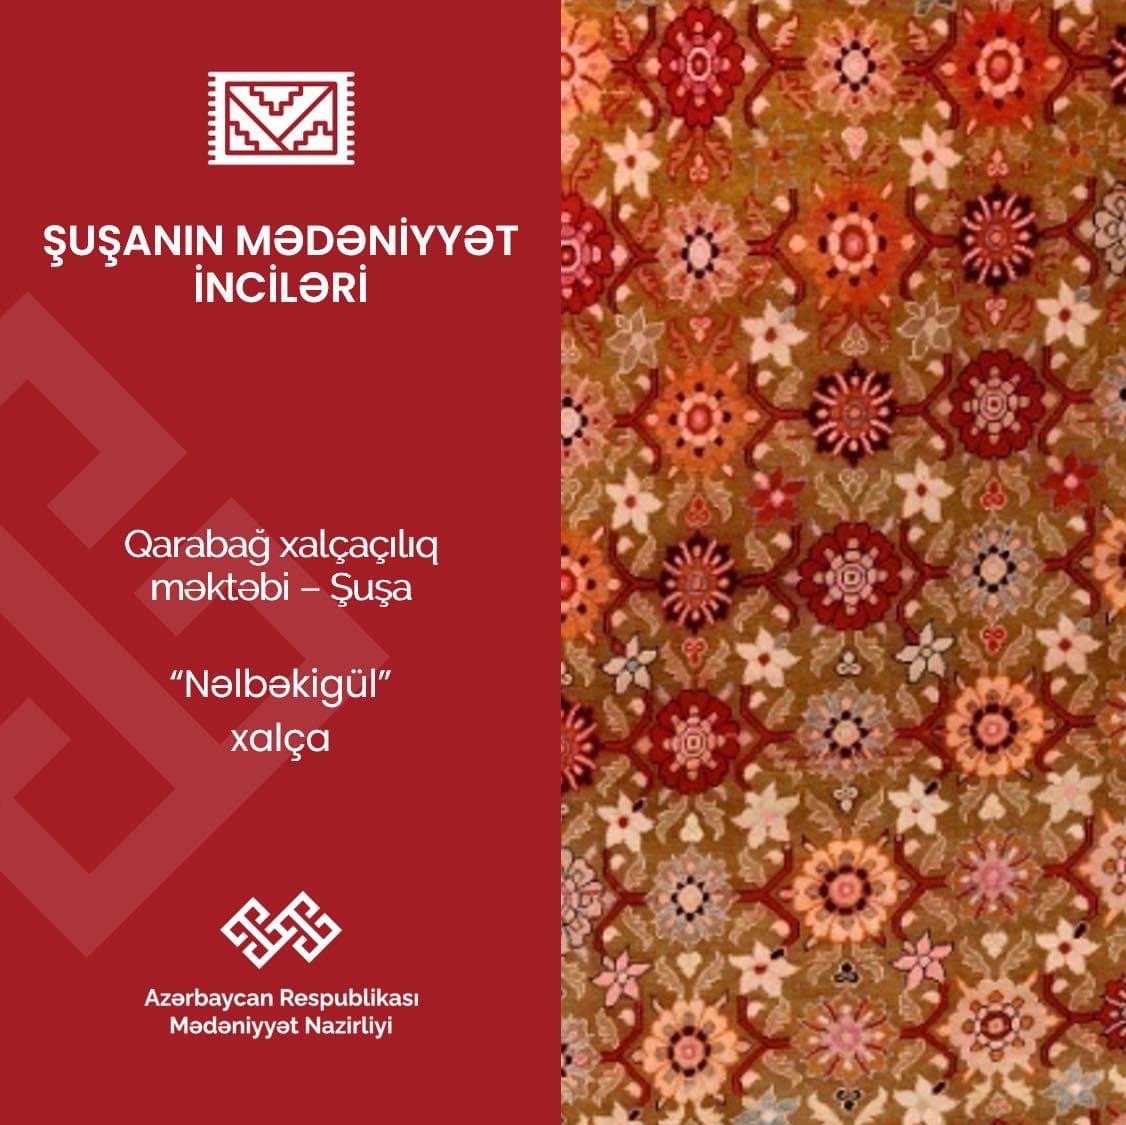 “Şuşa mədəniyyətinin inciləri” layihəsində “Nəlbəkigül” xalçası